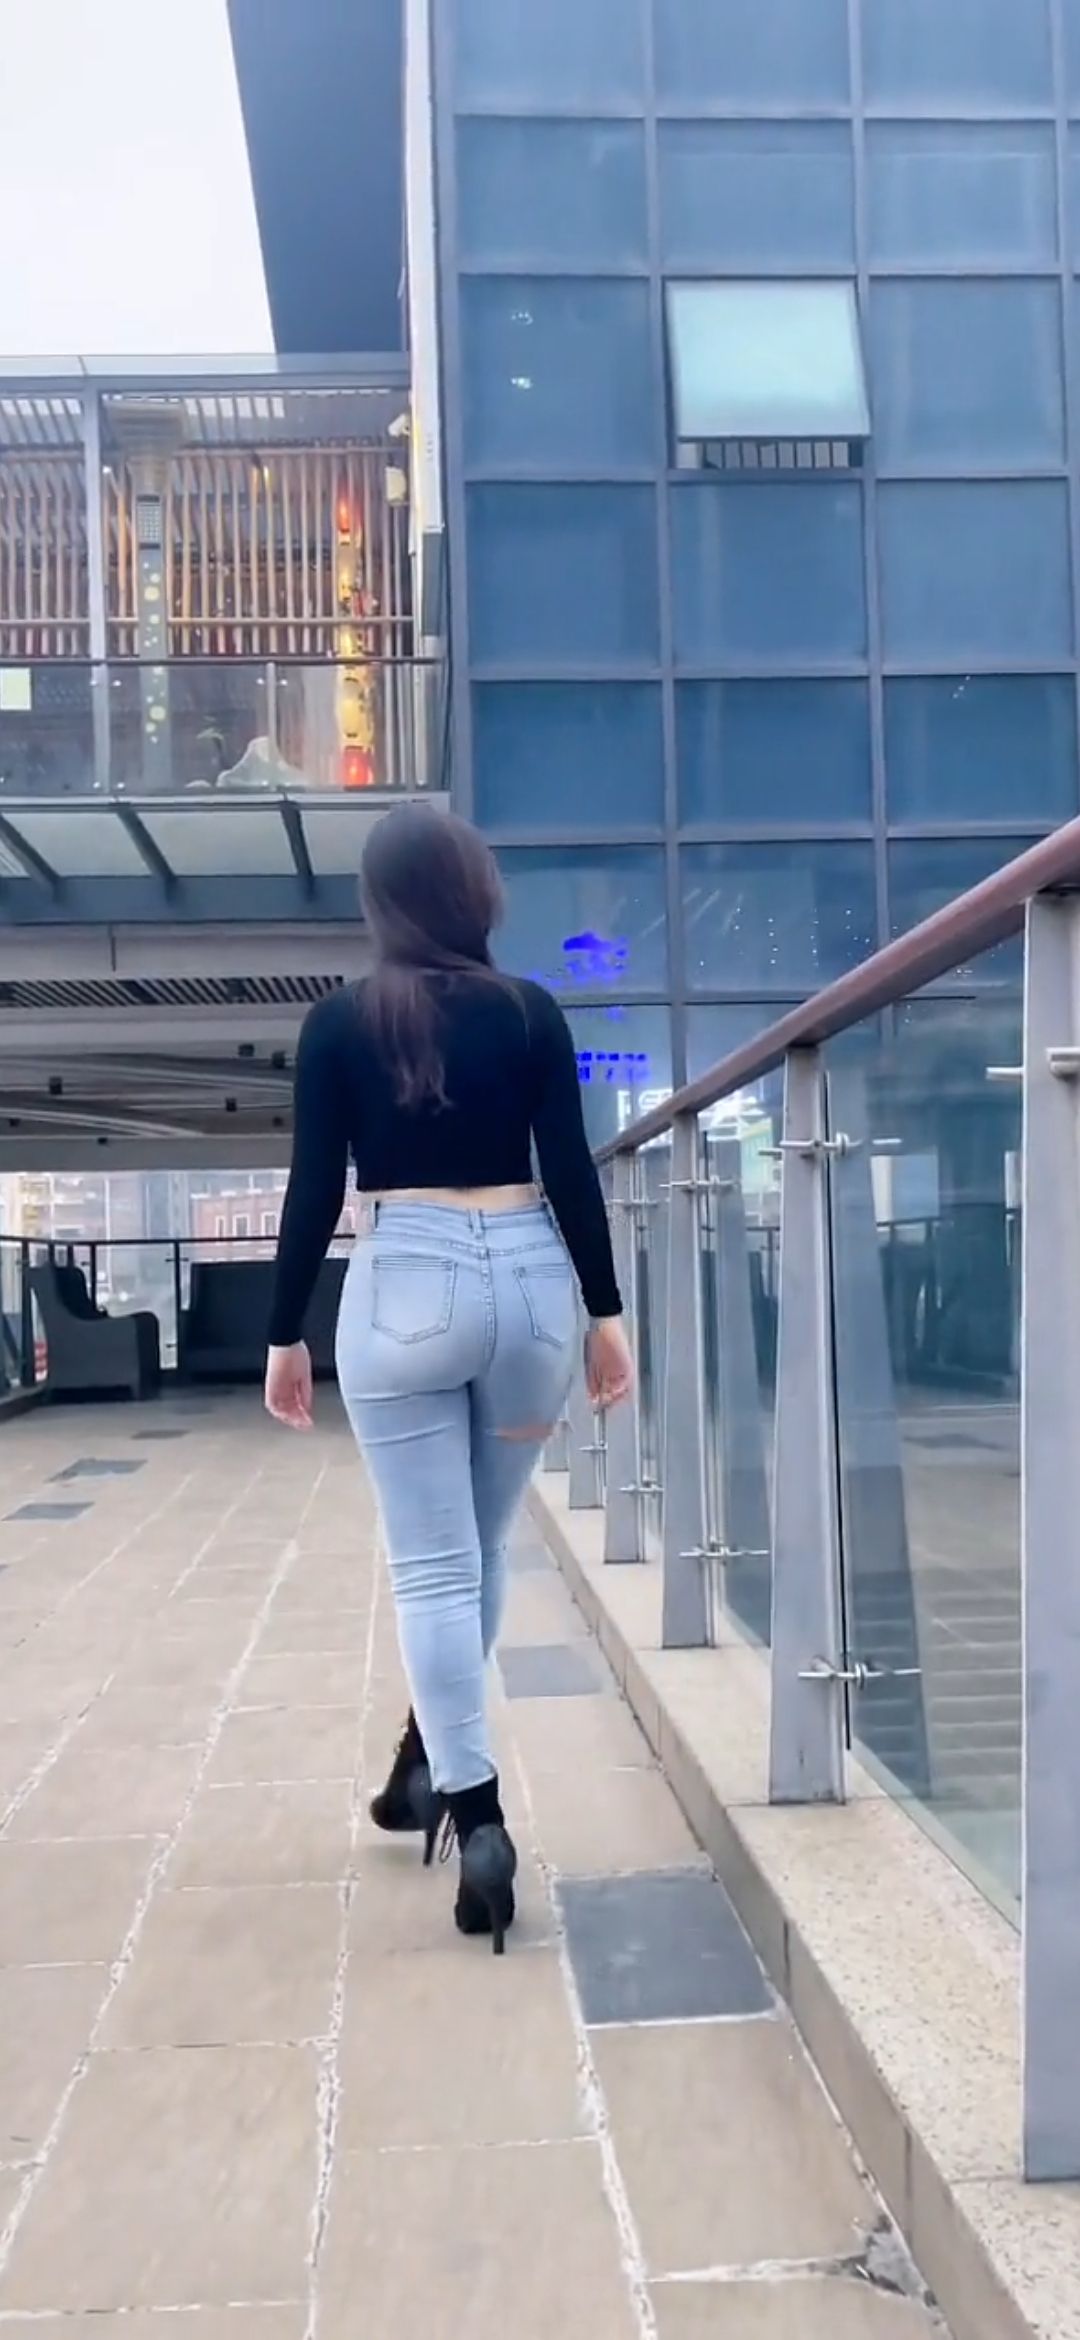 牛仔裤美女[视频]在国外旅行时碰到一位漂亮的牛仔裤美女牛仔裤美女